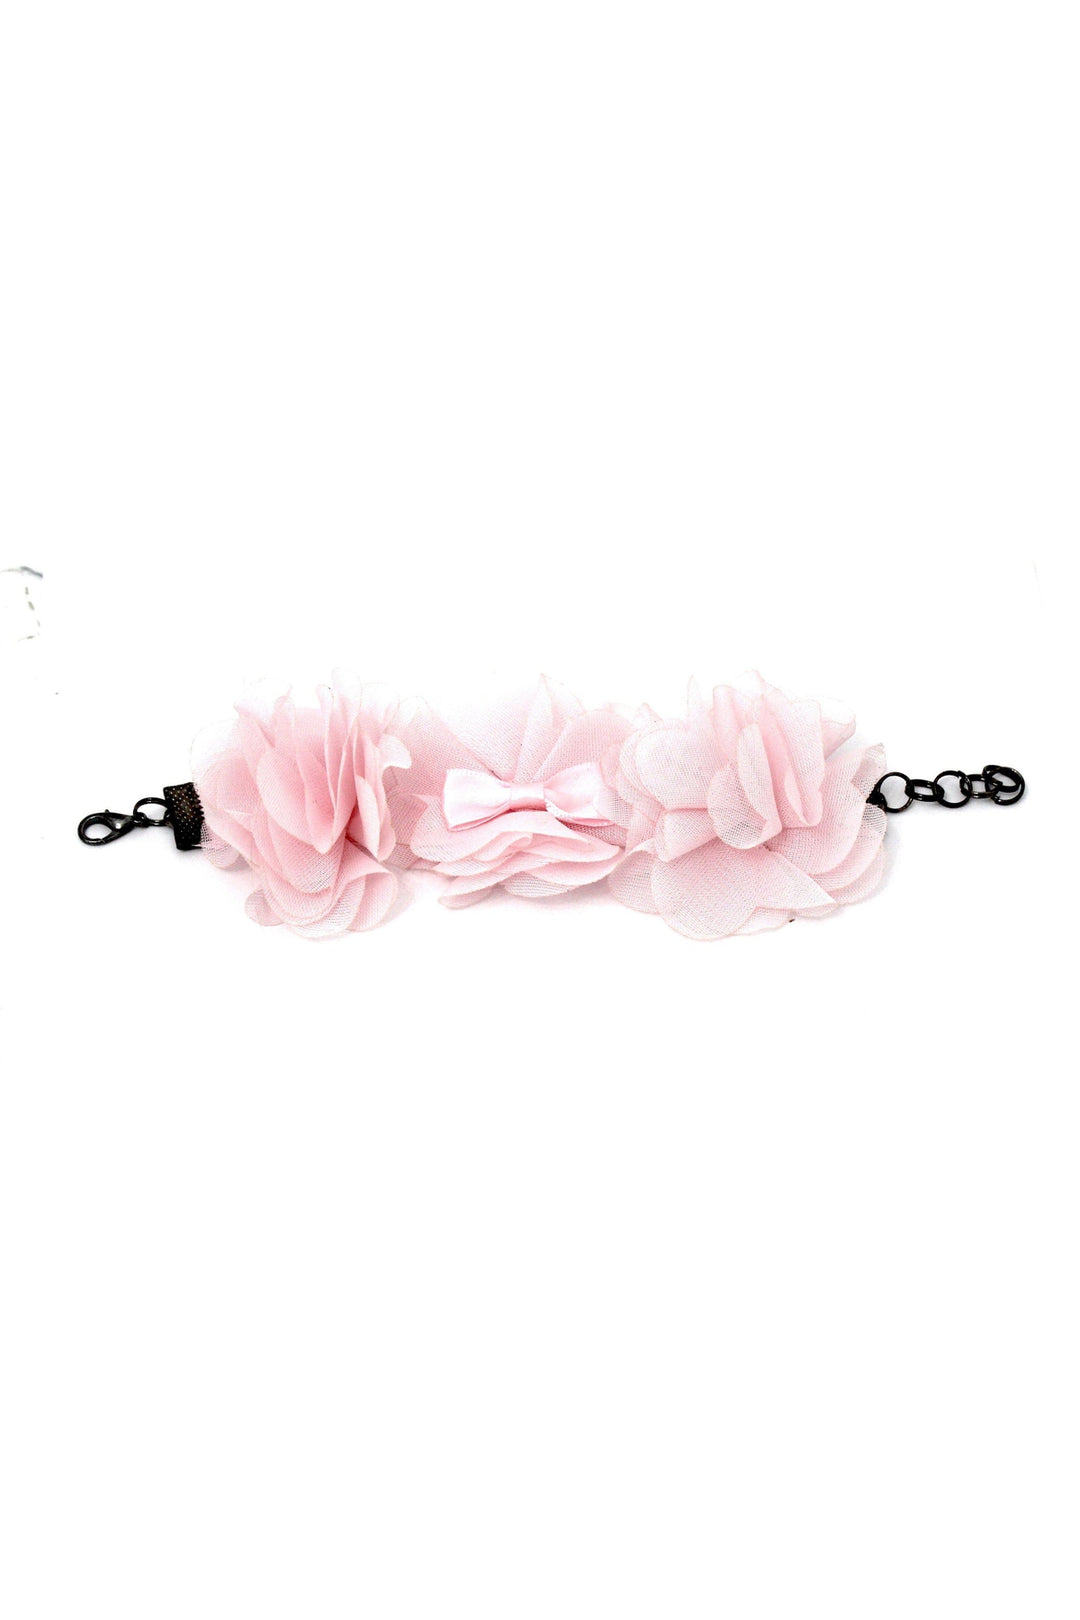 Daisy Tyelet-Body Jewelry-Tyes By Tara-Pink-O/S-SEXYSHOES.COM